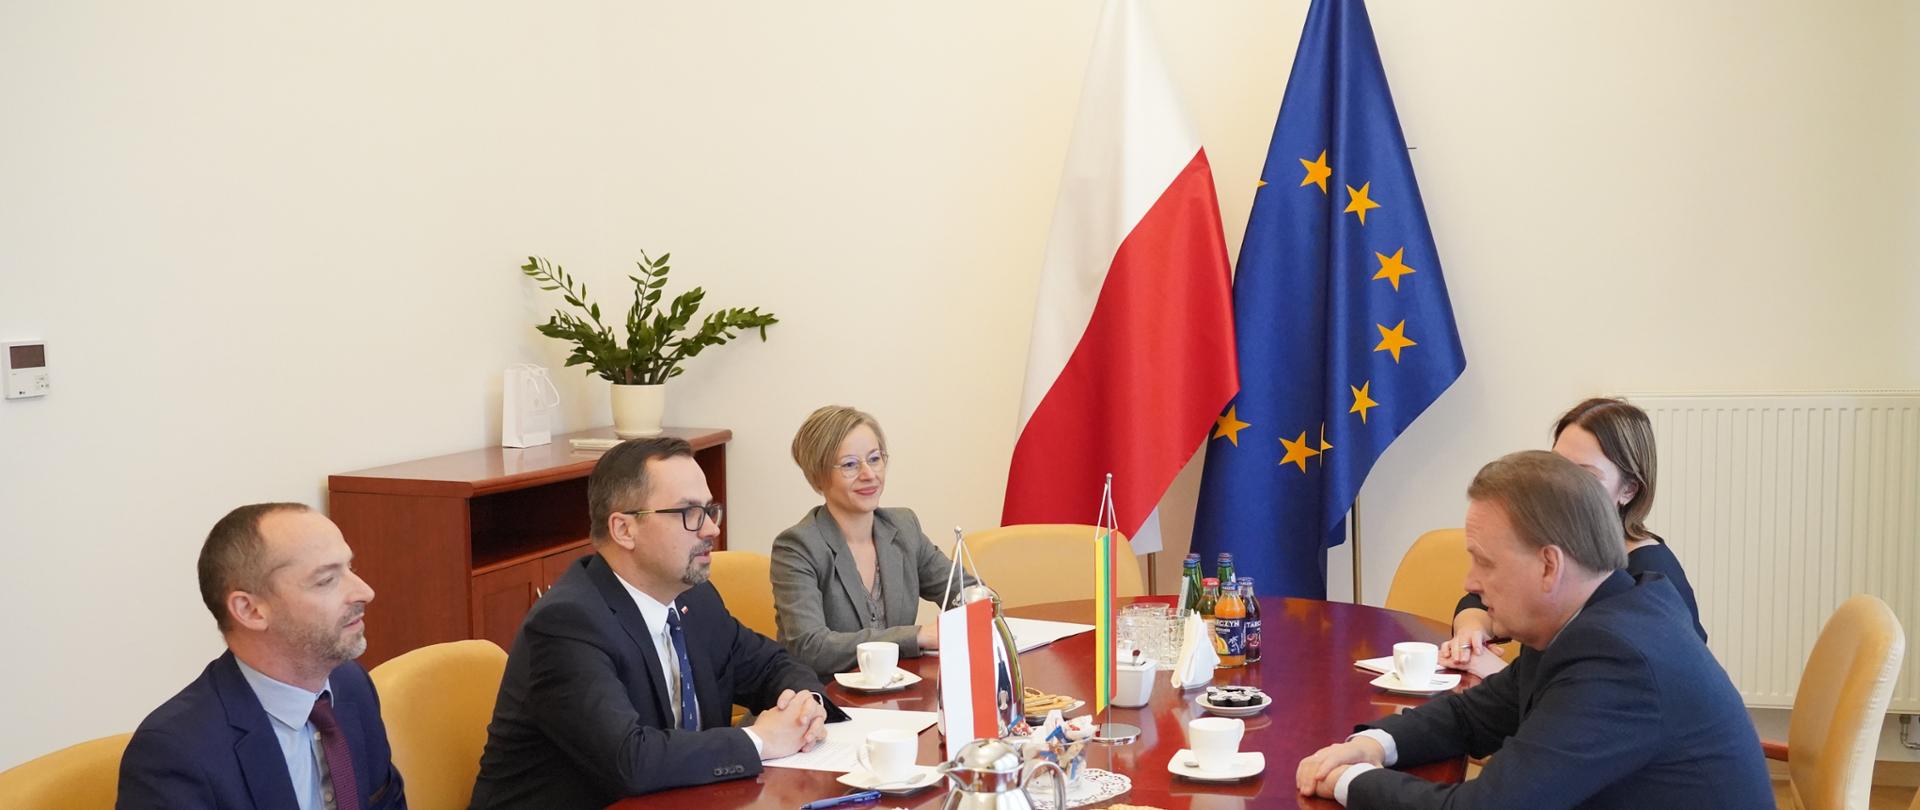 Pięć osób siedzi przy stole. Drugi od lewej siedzi wiceminister Marcin Horała. W środku na stole stoją dwie małe flagi Polski i Litwy.